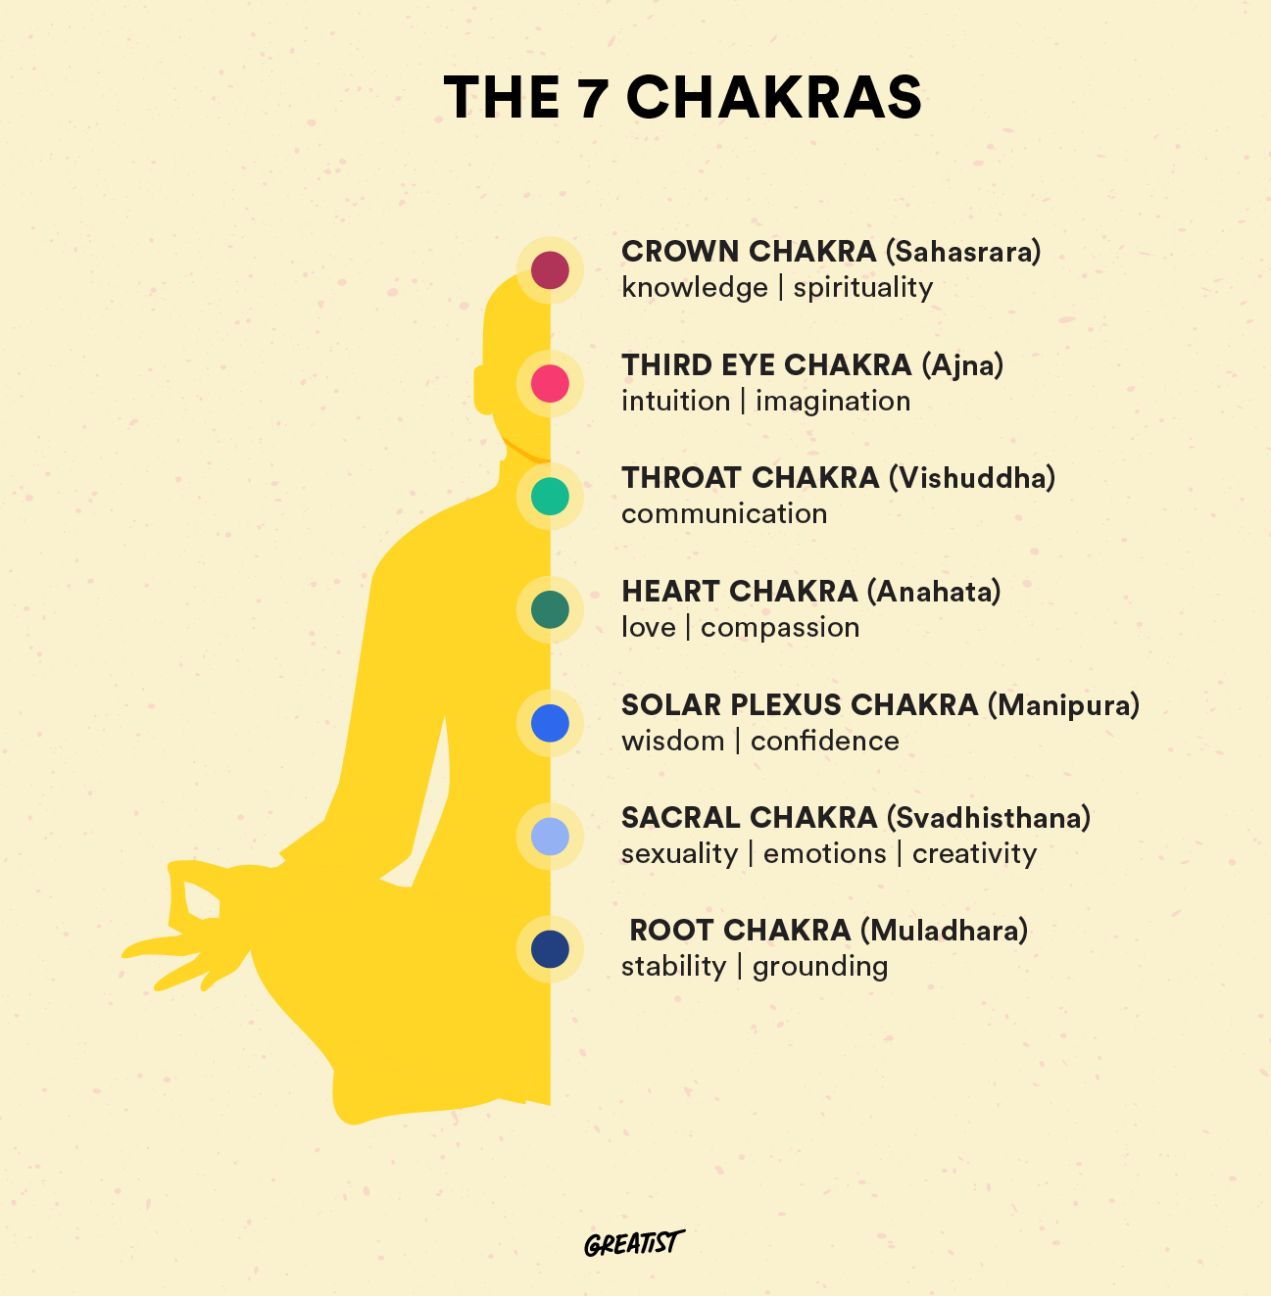 The 7 chakras chart